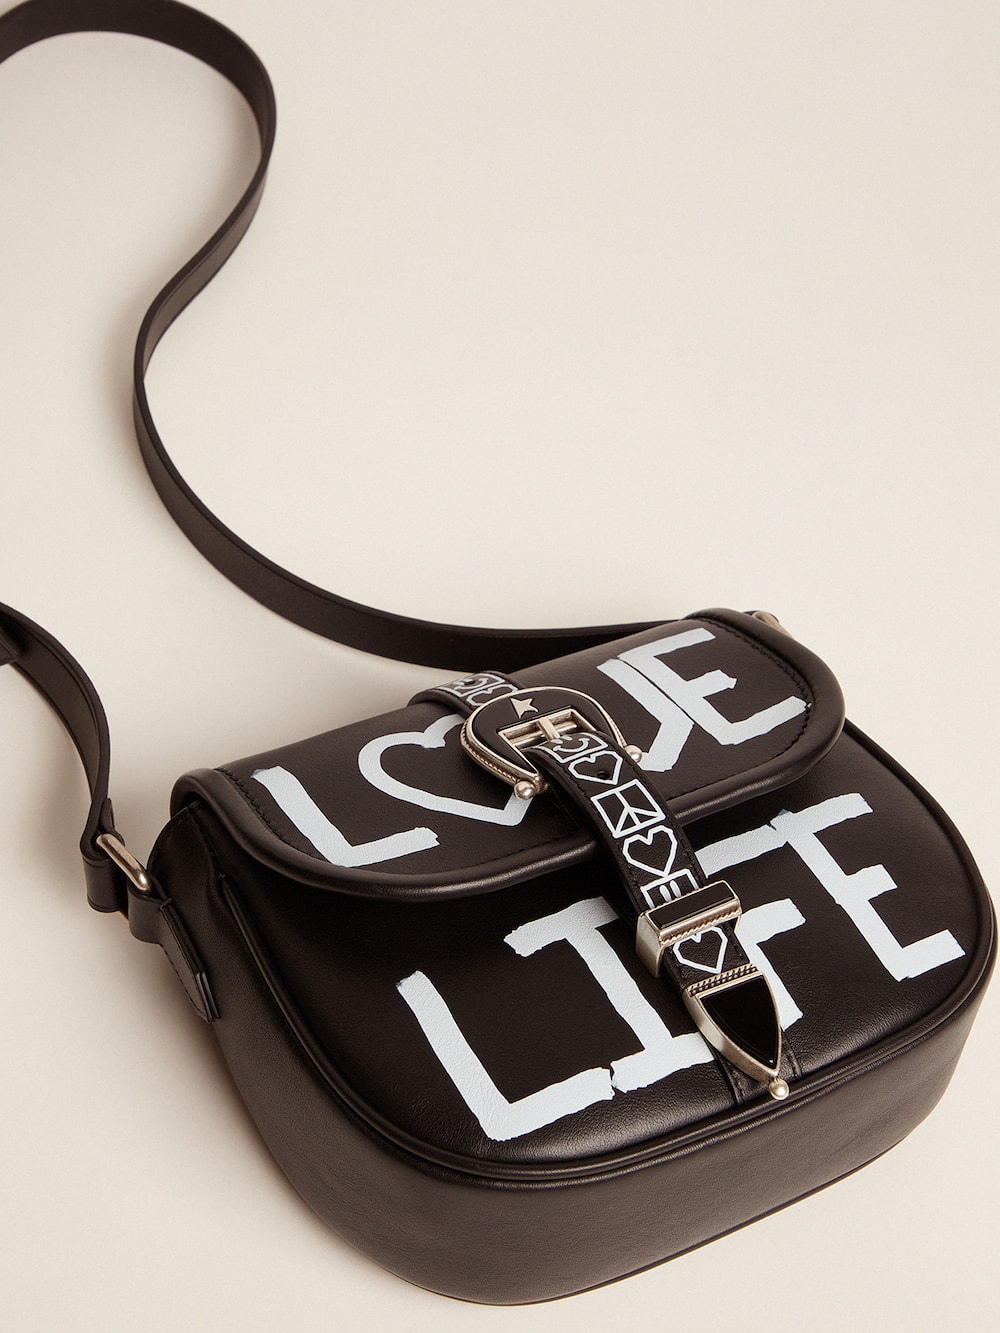 Golden Goose - Bolso Rodeo Bag Small negro de piel con estampado serigrafiado «Love Life» in 